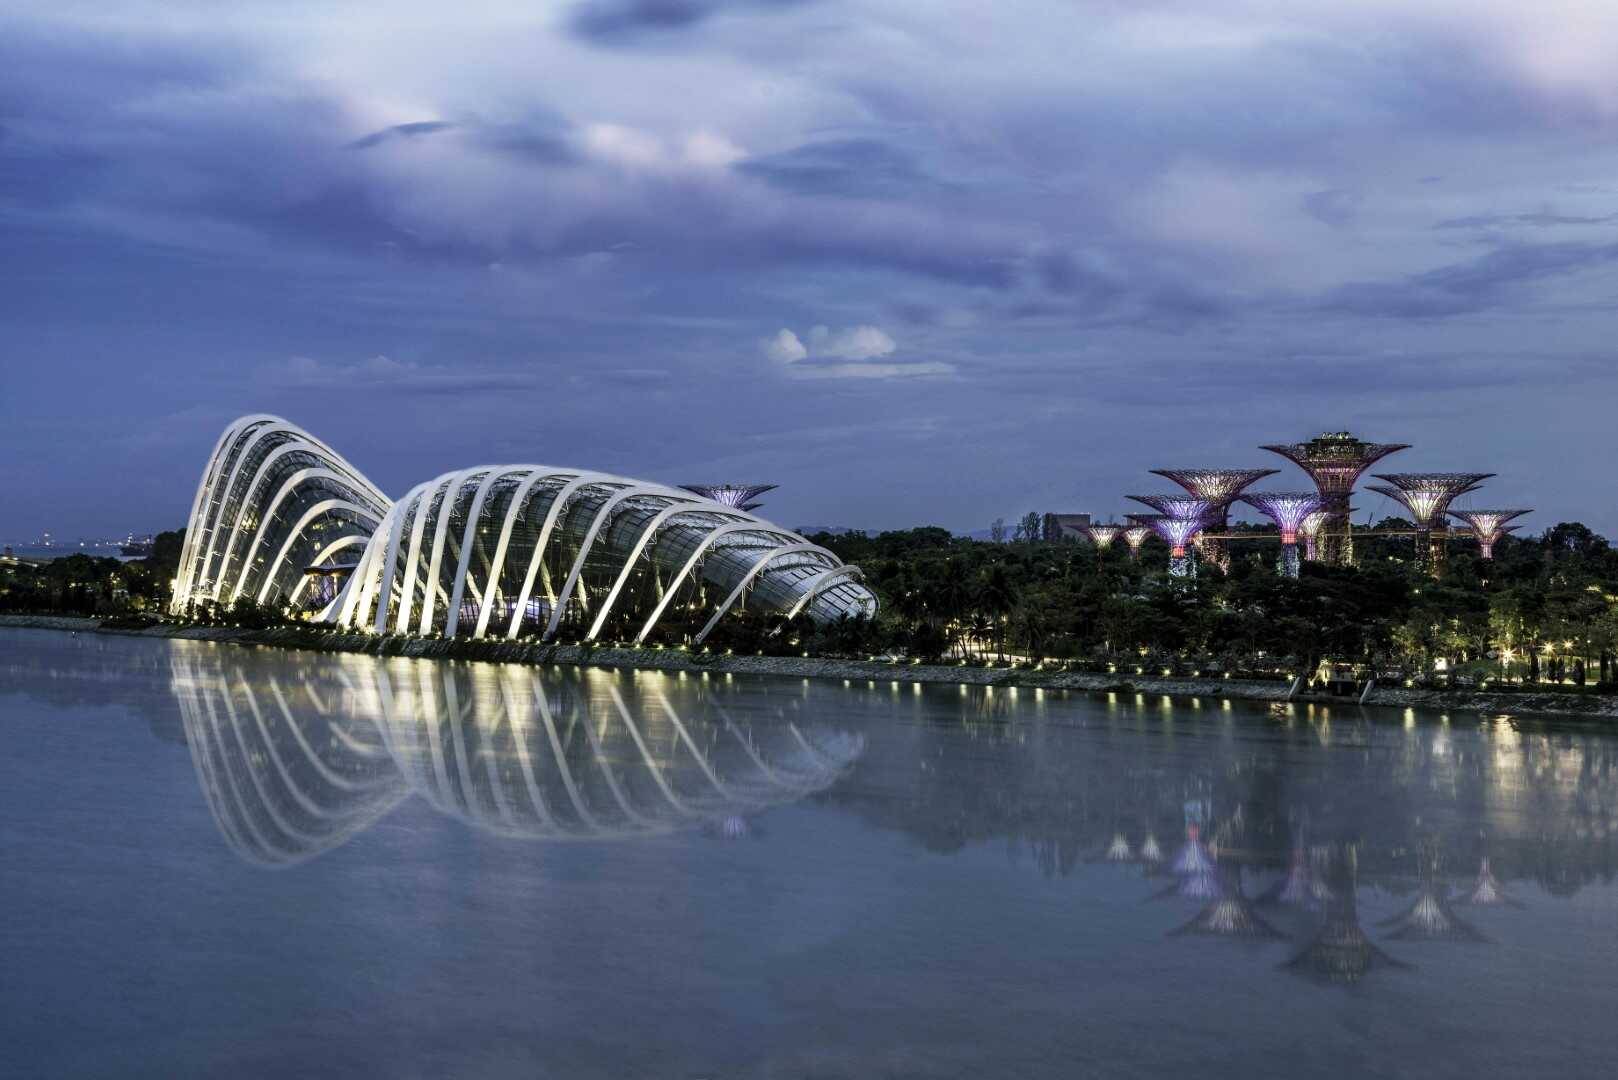 Du lịch Singapore - Malaysia 6 ngày khởi hành từ Sài Gòn giá tốt